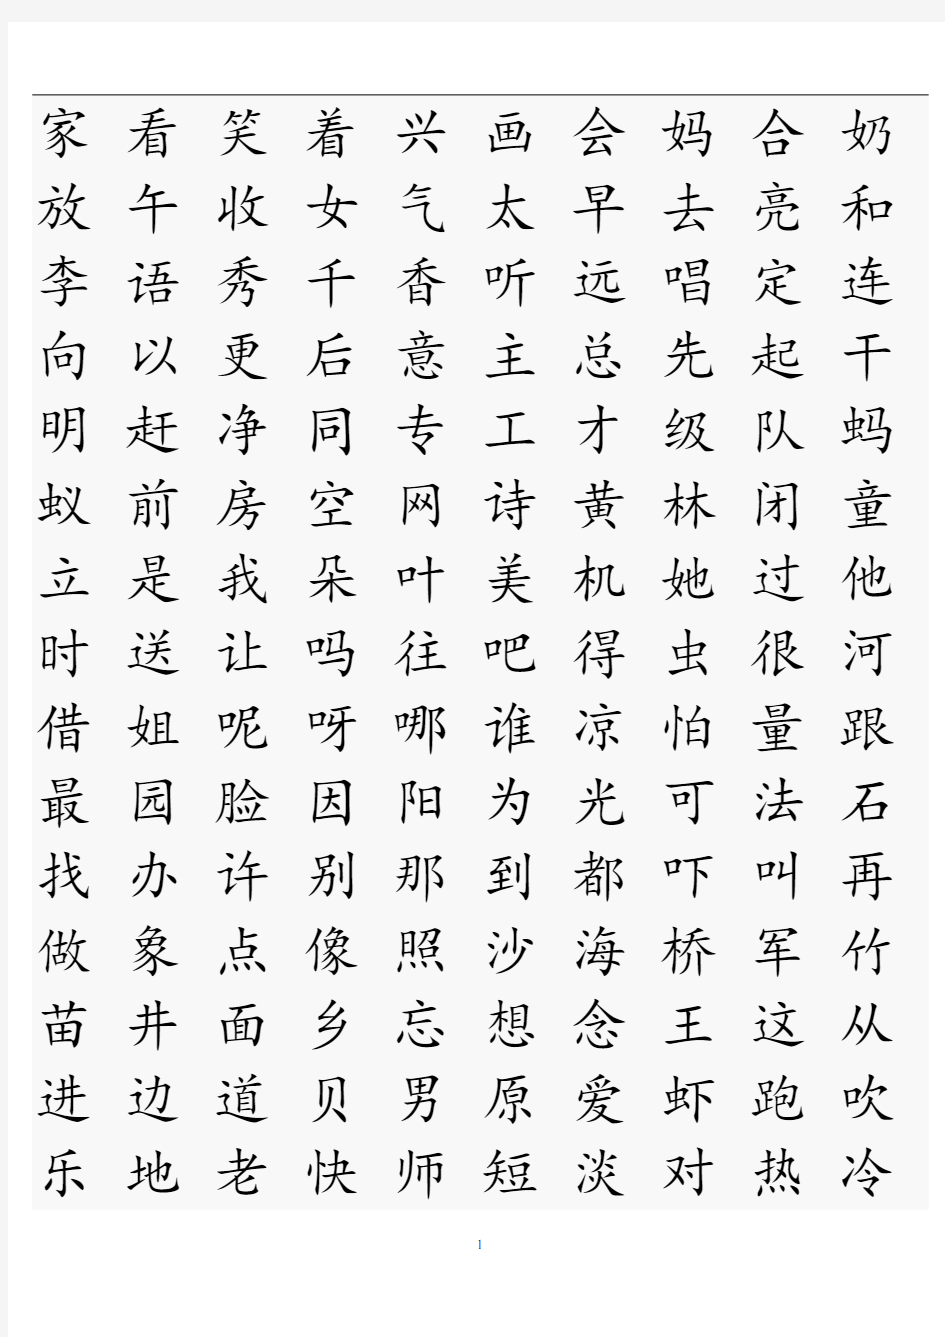 一至六年级常用汉字生字表分析